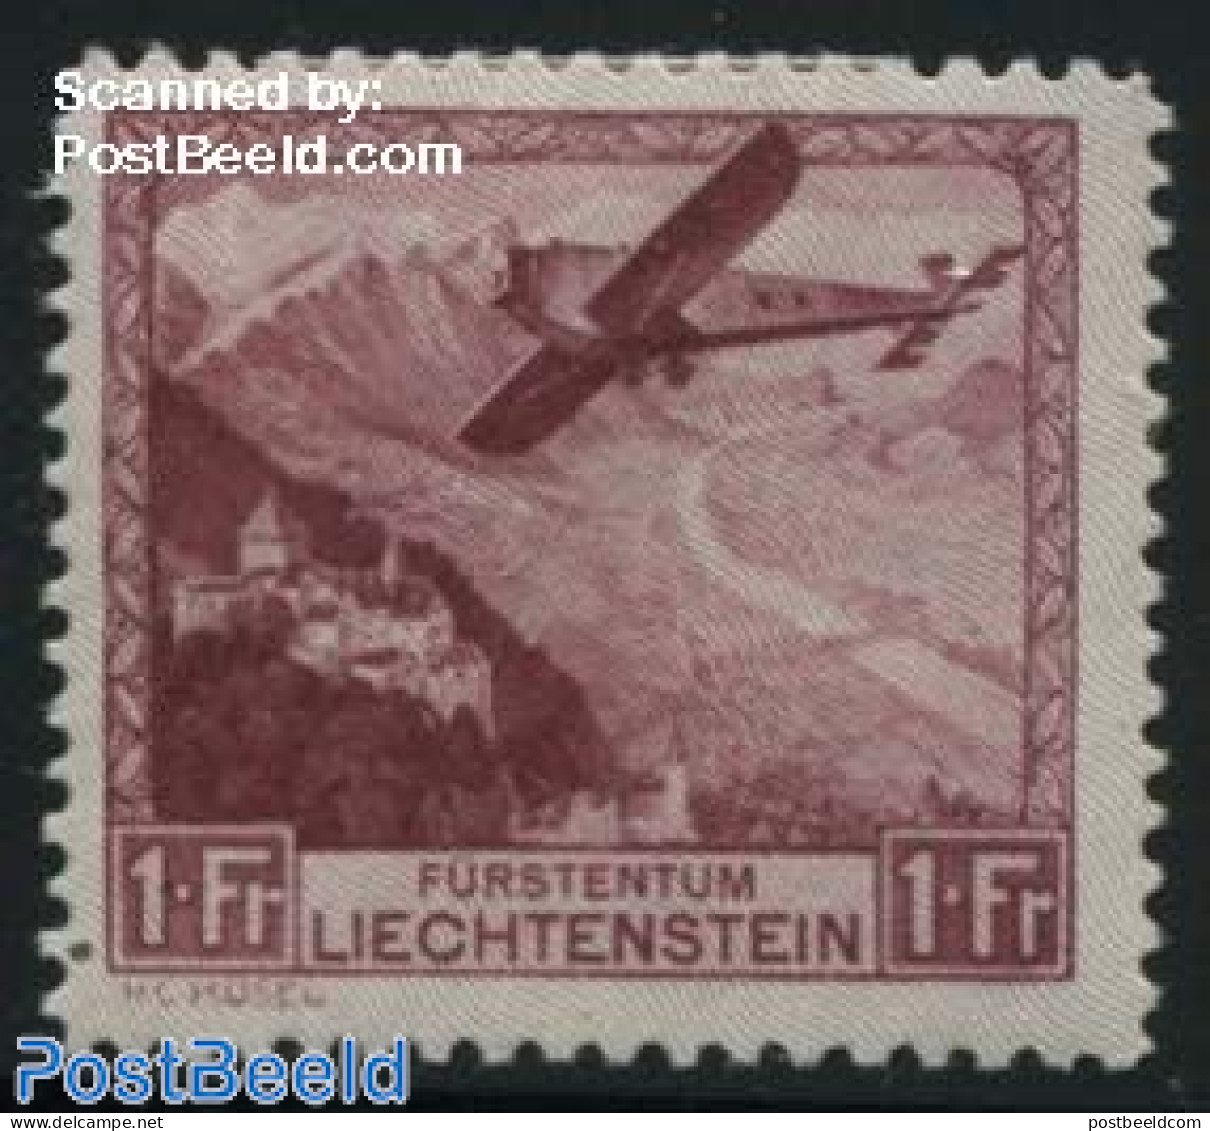 Liechtenstein 1930 1Fr, Stamp Out Of Set, Mint NH, Transport - Aircraft & Aviation - Neufs